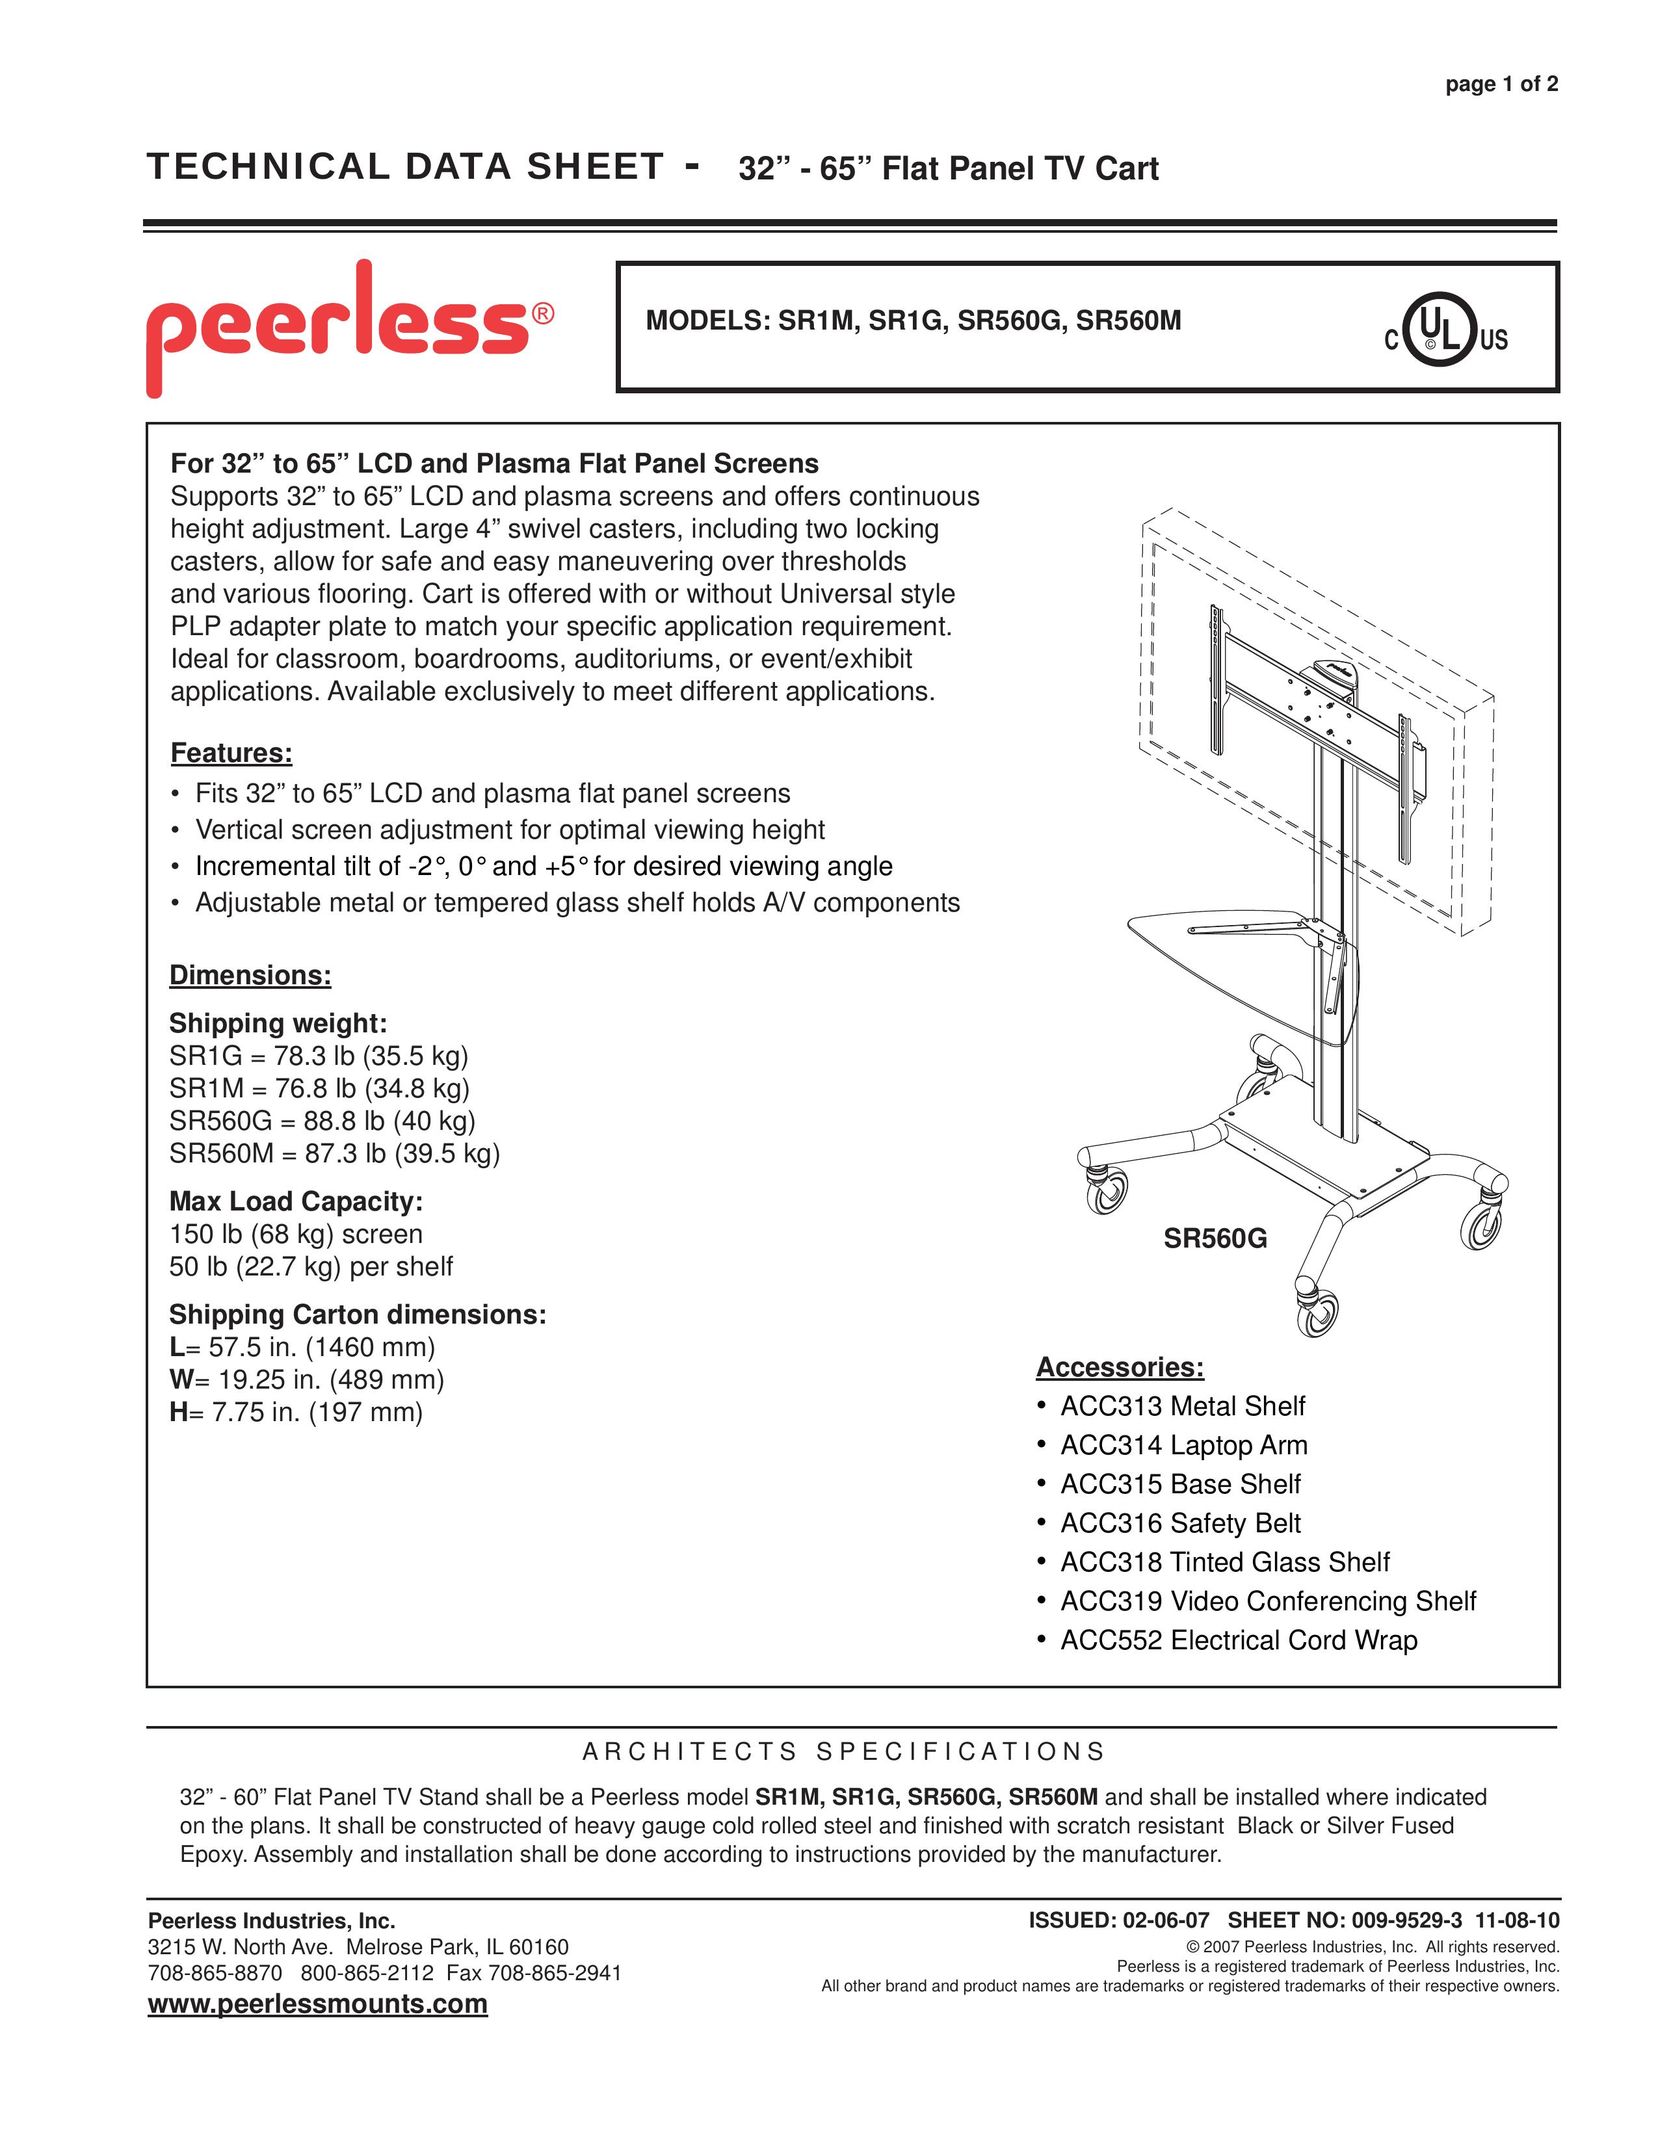 Peerless Industries SR560G Indoor Furnishings User Manual